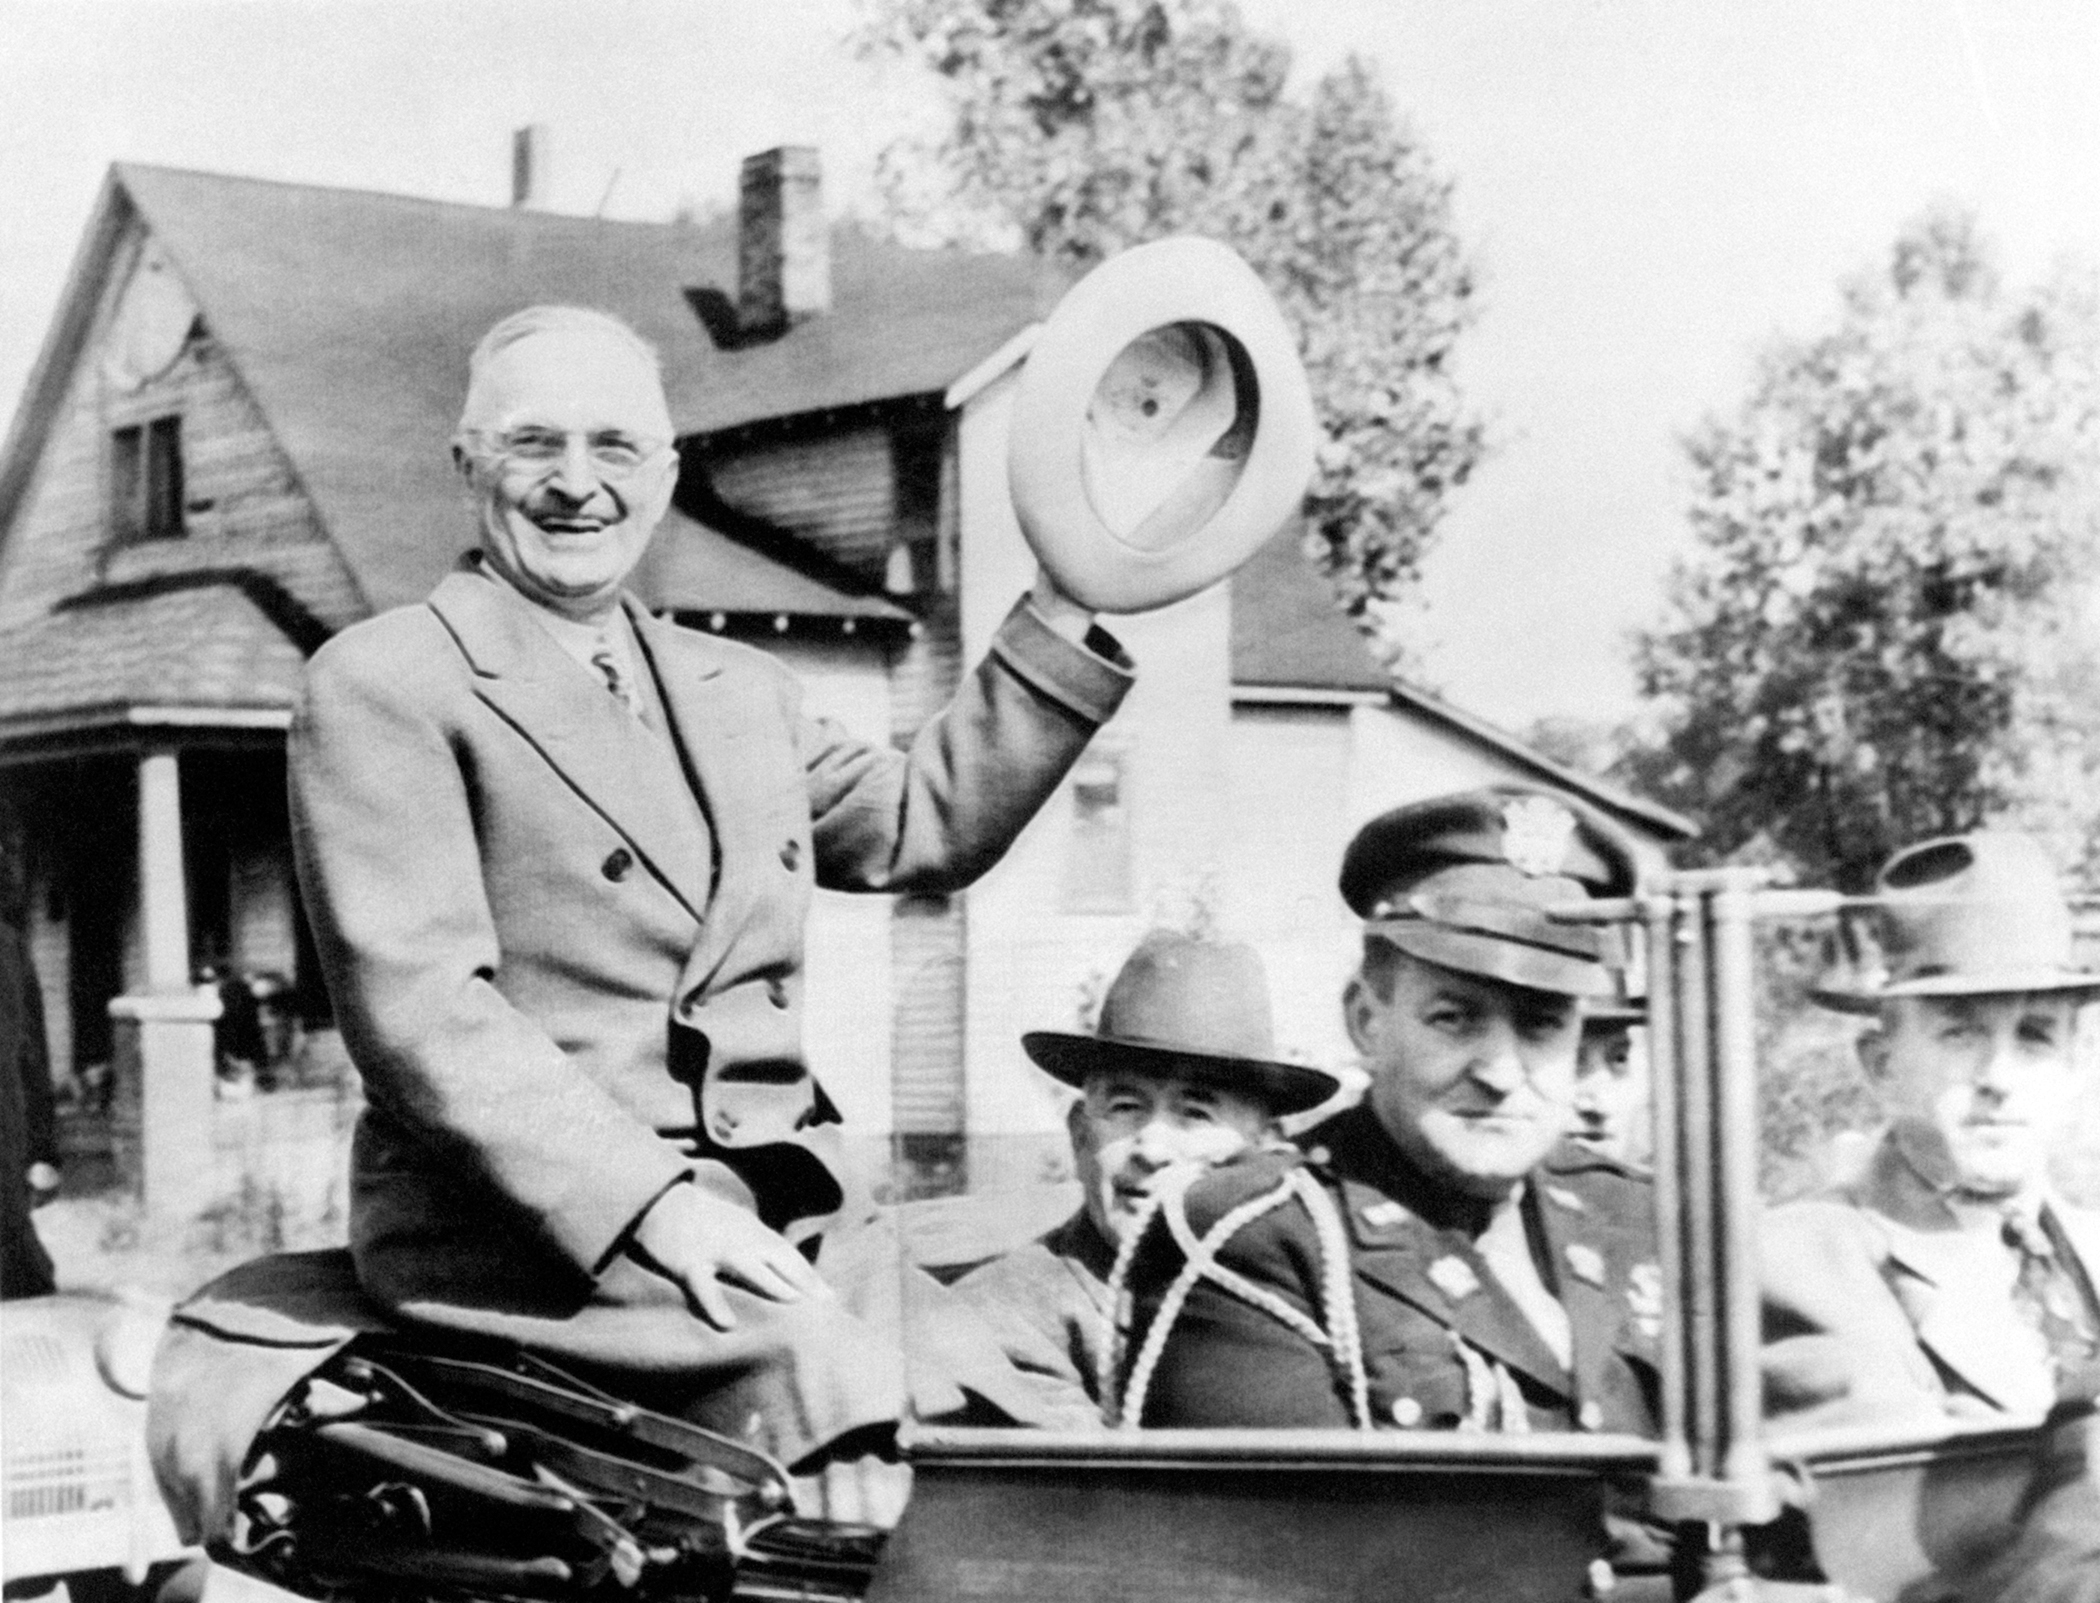 Le President Harry Truman se rendant l'inauguration d'un barrage dans le Tennessee, aux Etats-Unis en 1945.